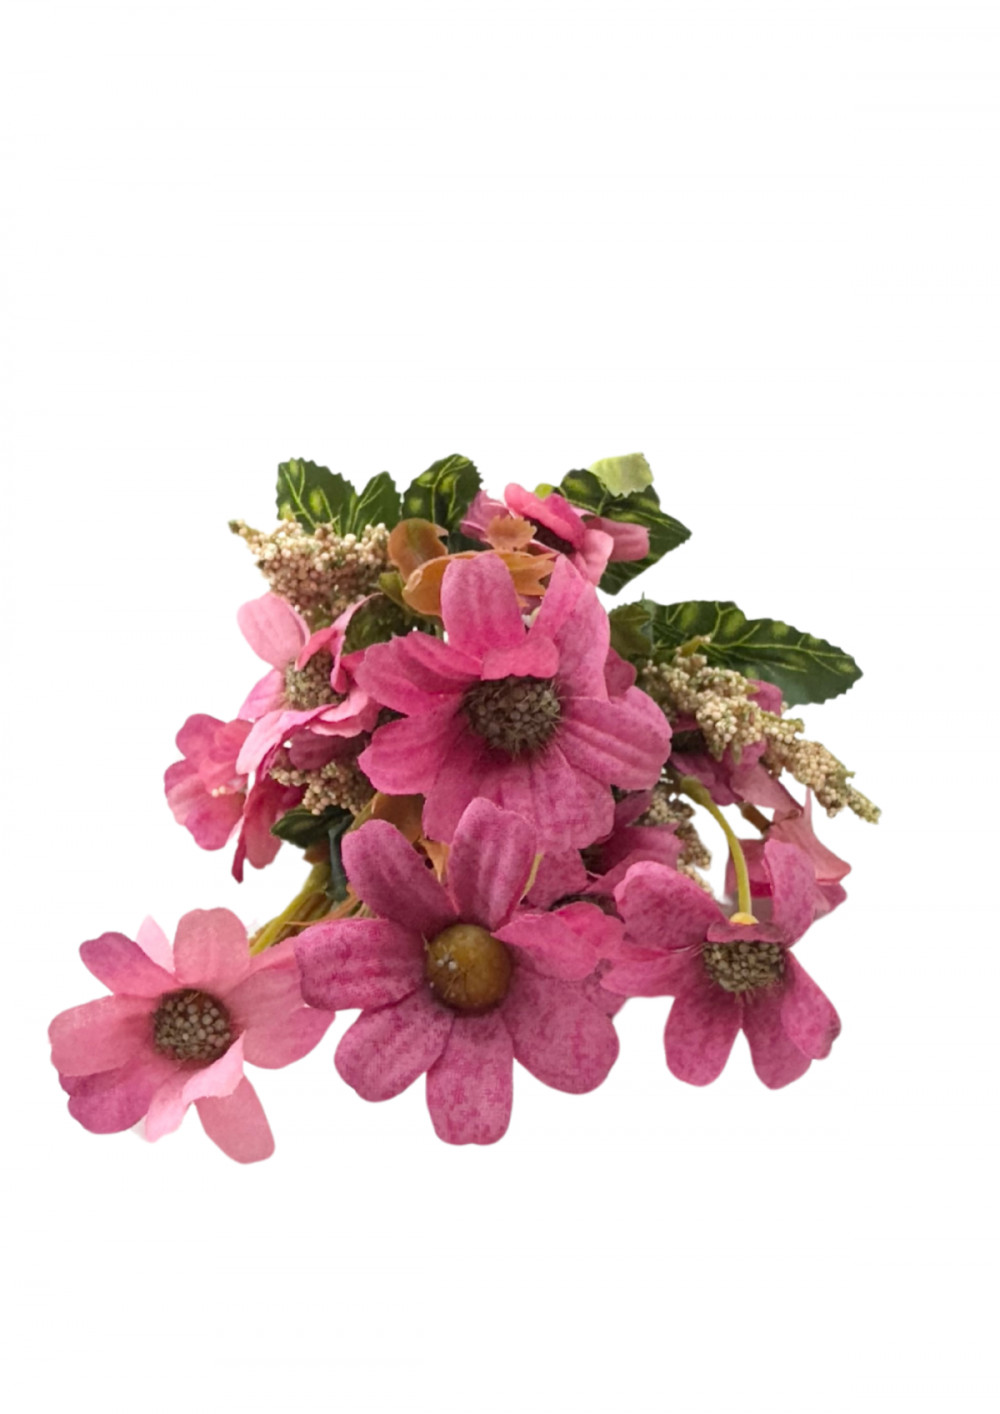 Selyemvirág csokor - Pillangóvirág (Cosmos), 30cm - Pink 7584PI